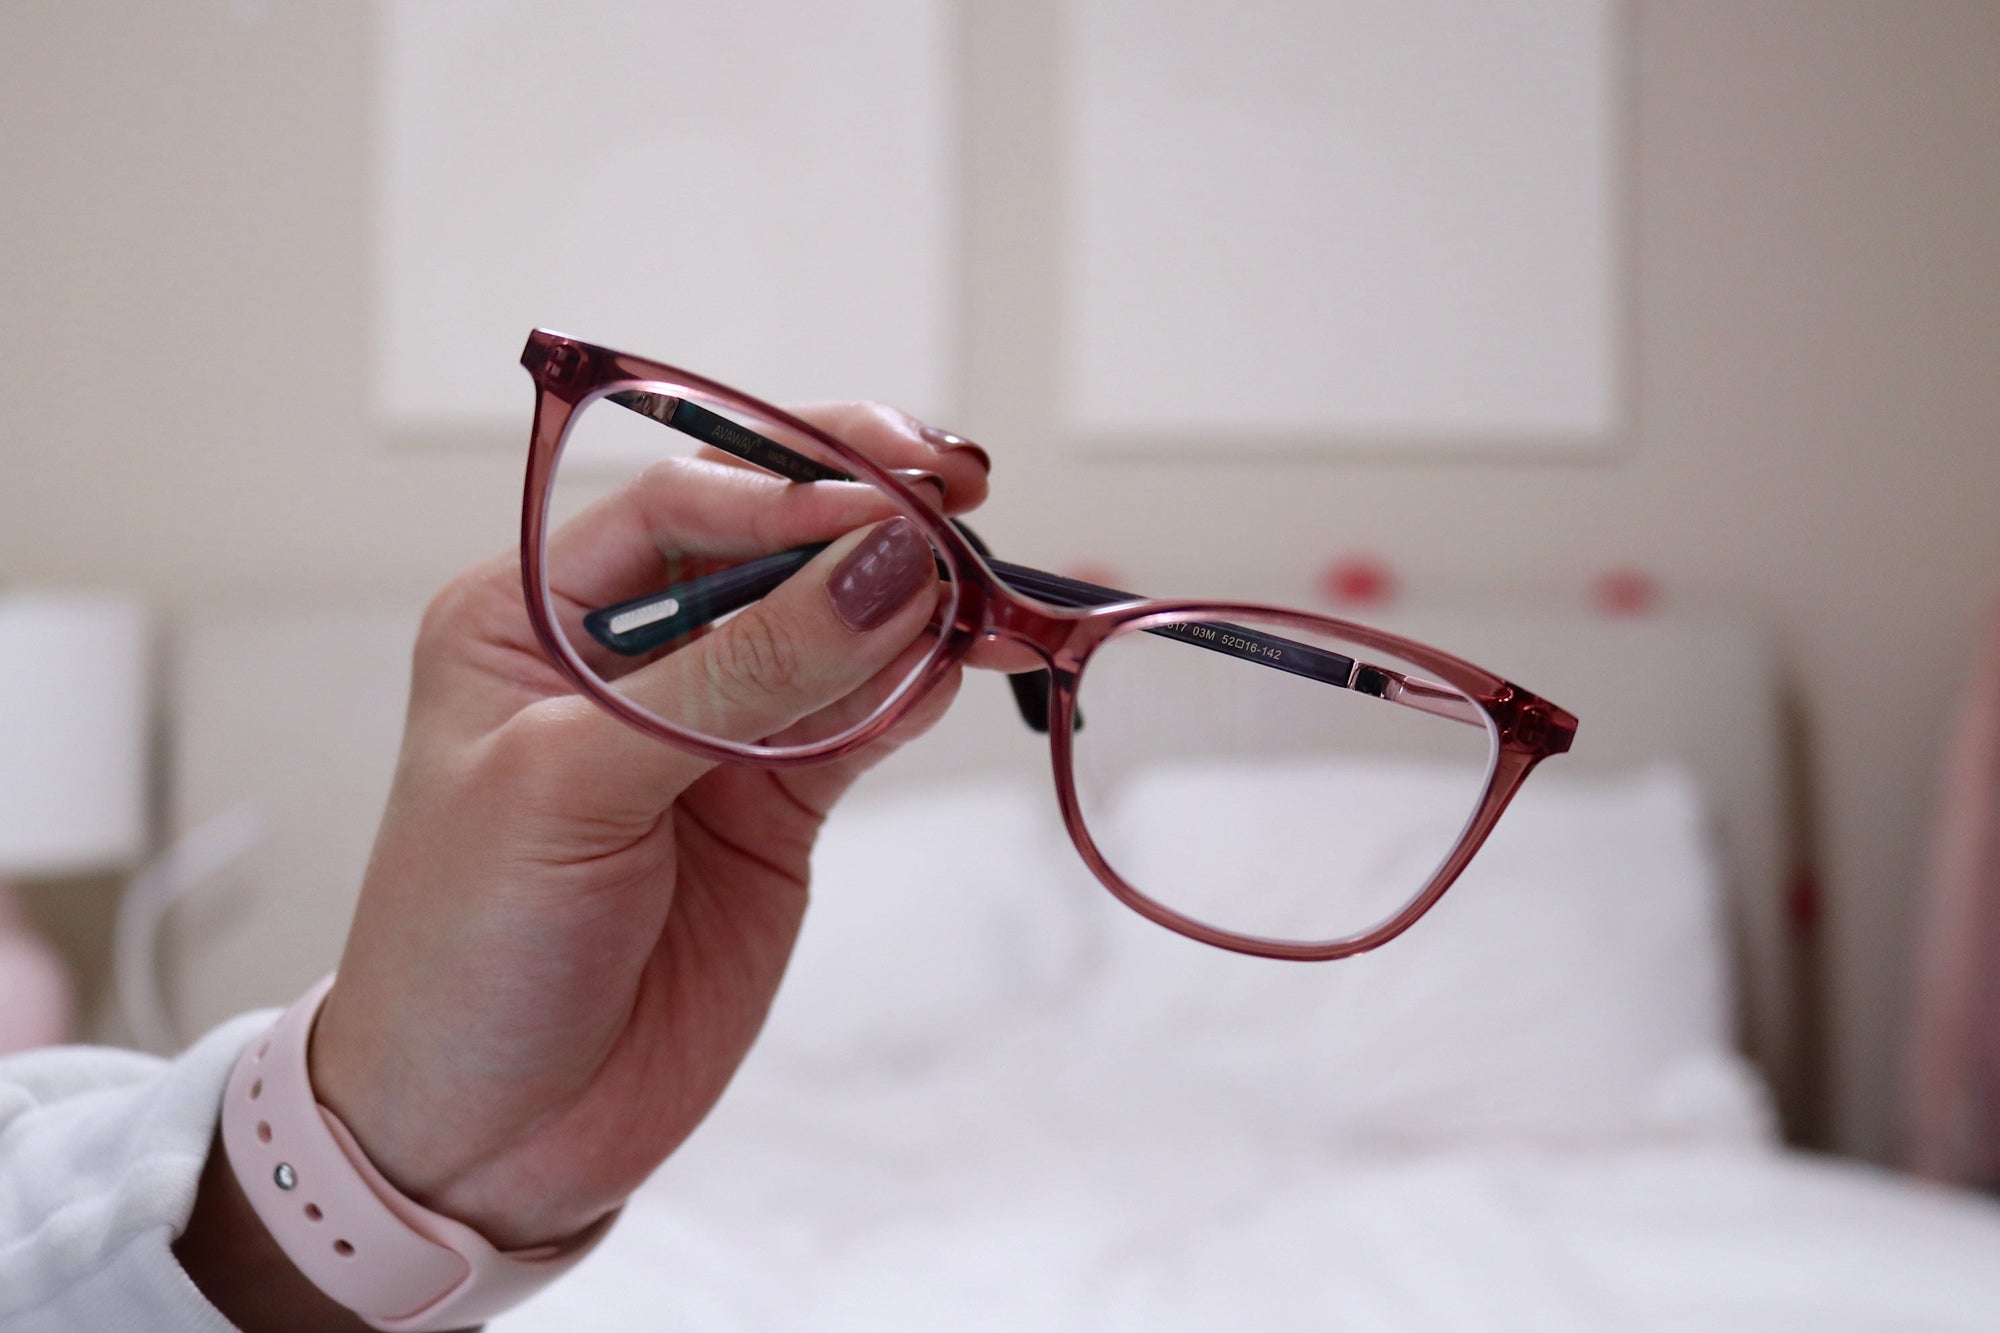 who has cheap prescription glasses? | KOALAEYE OPTICAL